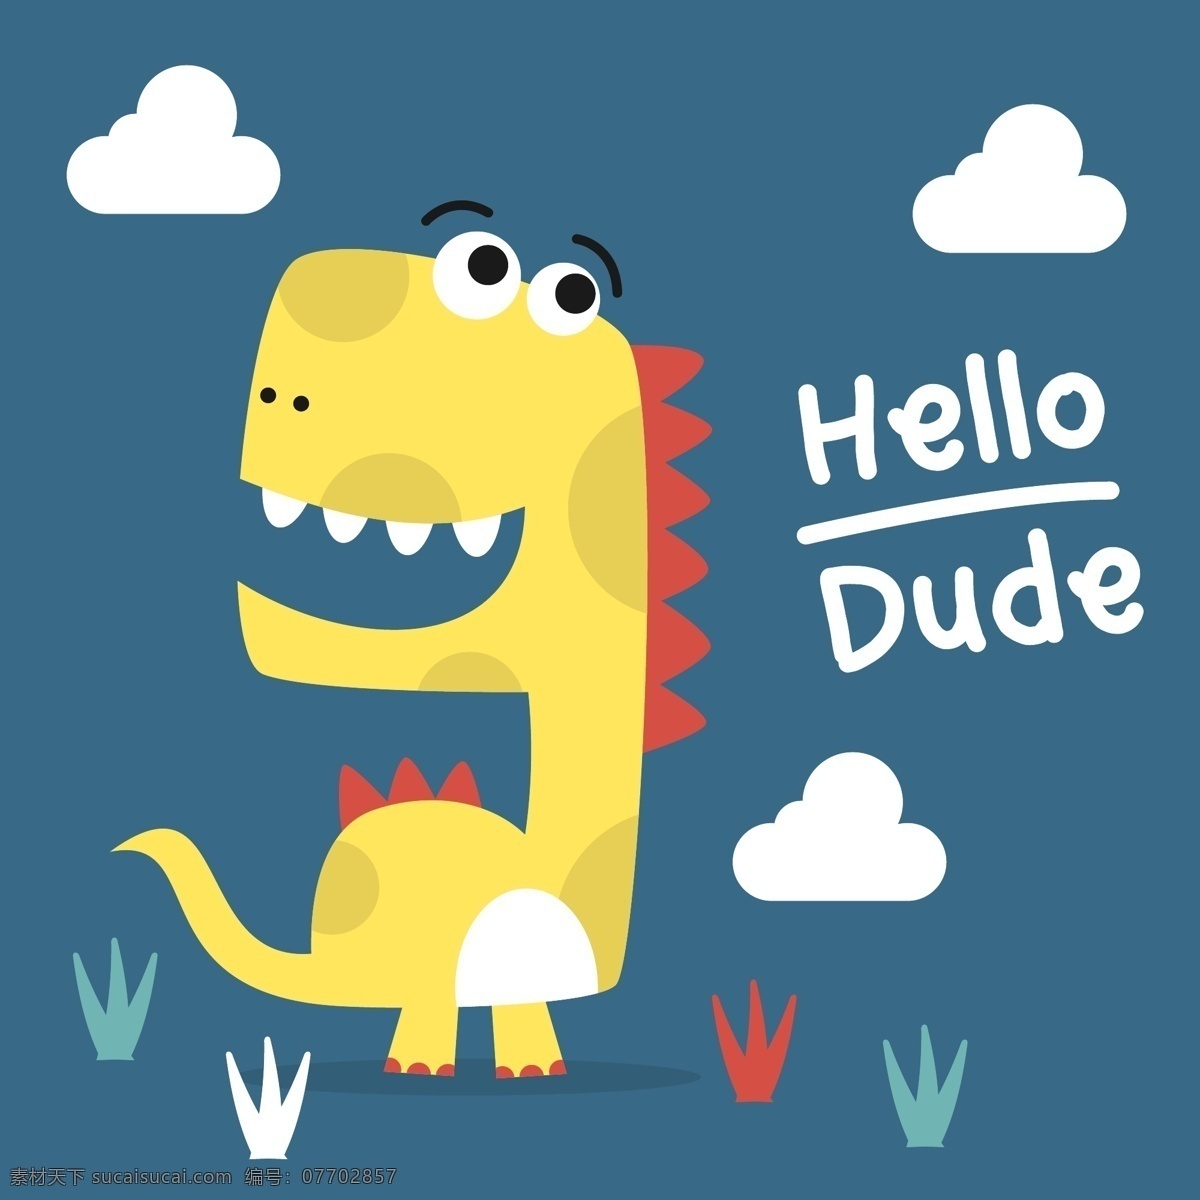 黄色 恐龙 q 仔 矢量图 卡通 可爱 儿童手绘图 动物背景图案 画芯装饰 抱枕设计 矢量素材 恐龙图片下载 卡通动物 恐龙q仔